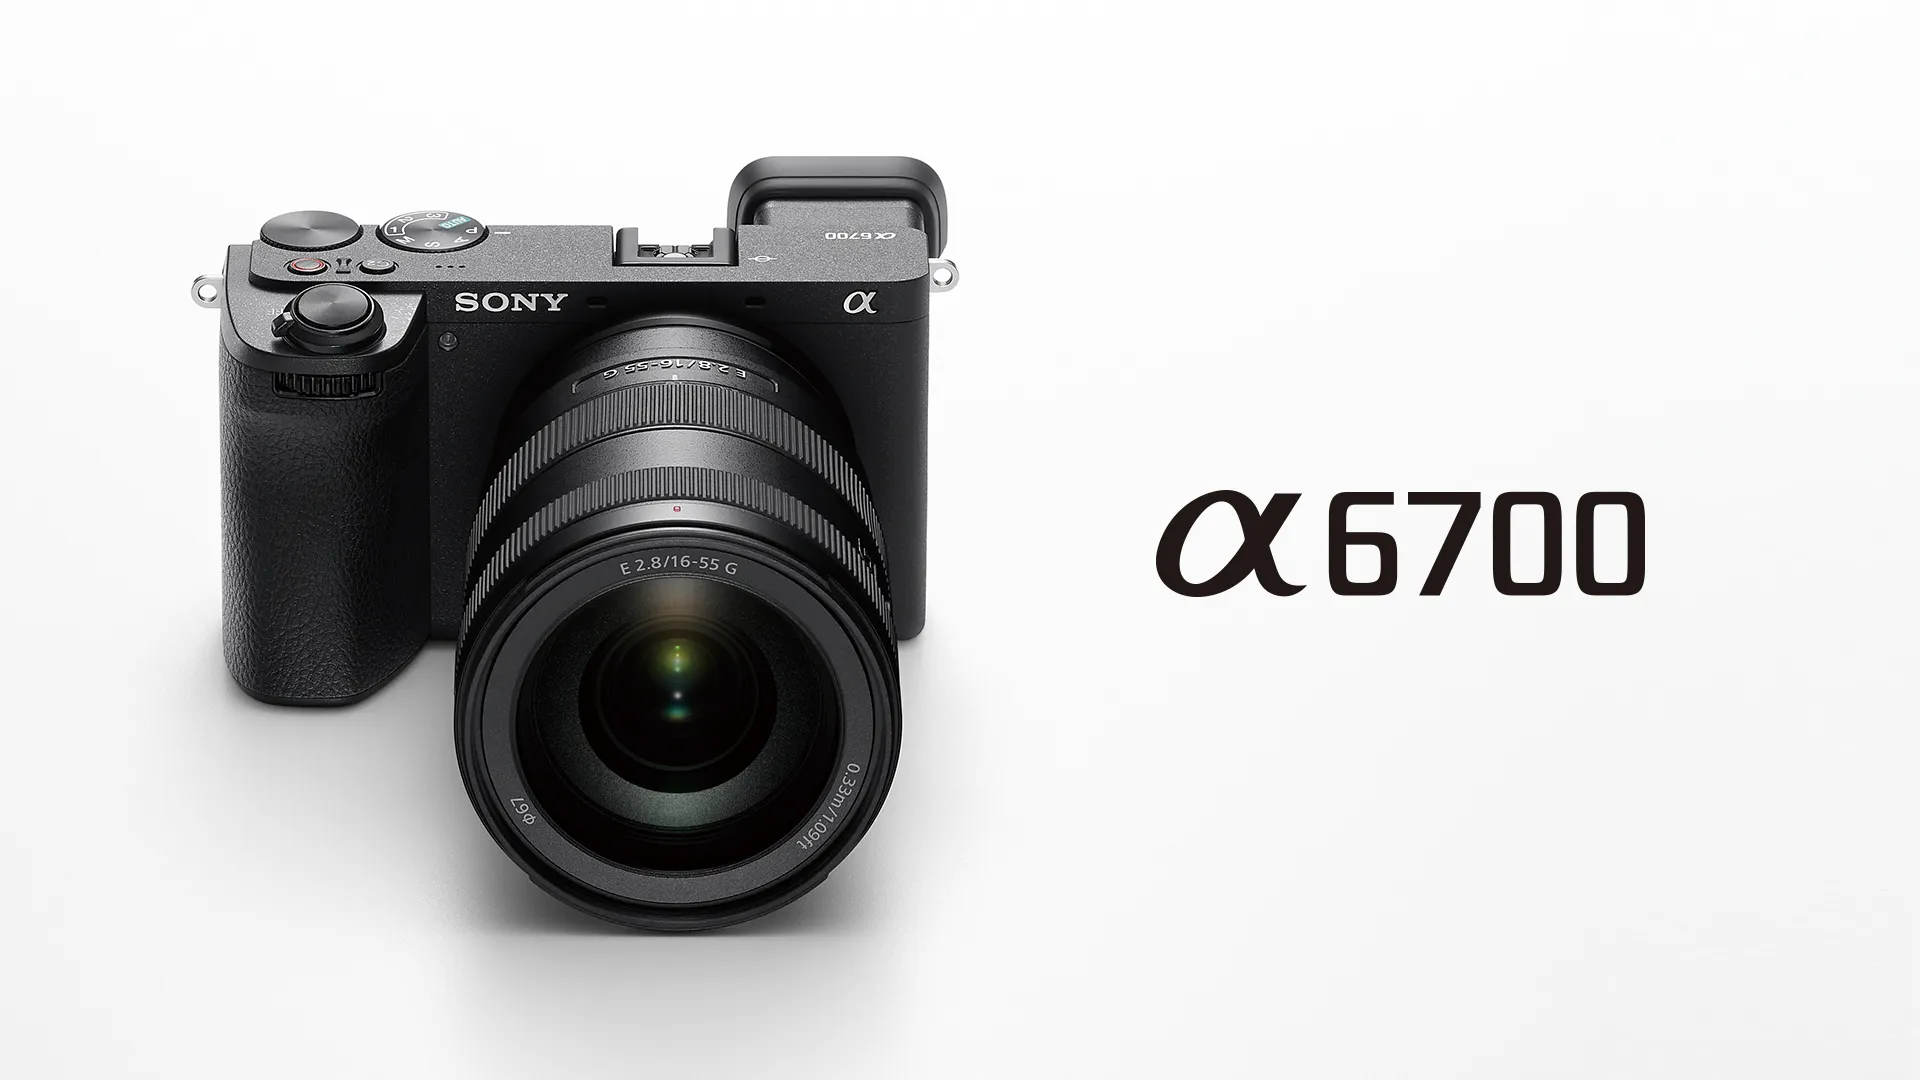 Sony ra mắt máy ảnh APS-C thế hệ mới a6700 tại Việt Nam, giá 35,990,000 VND